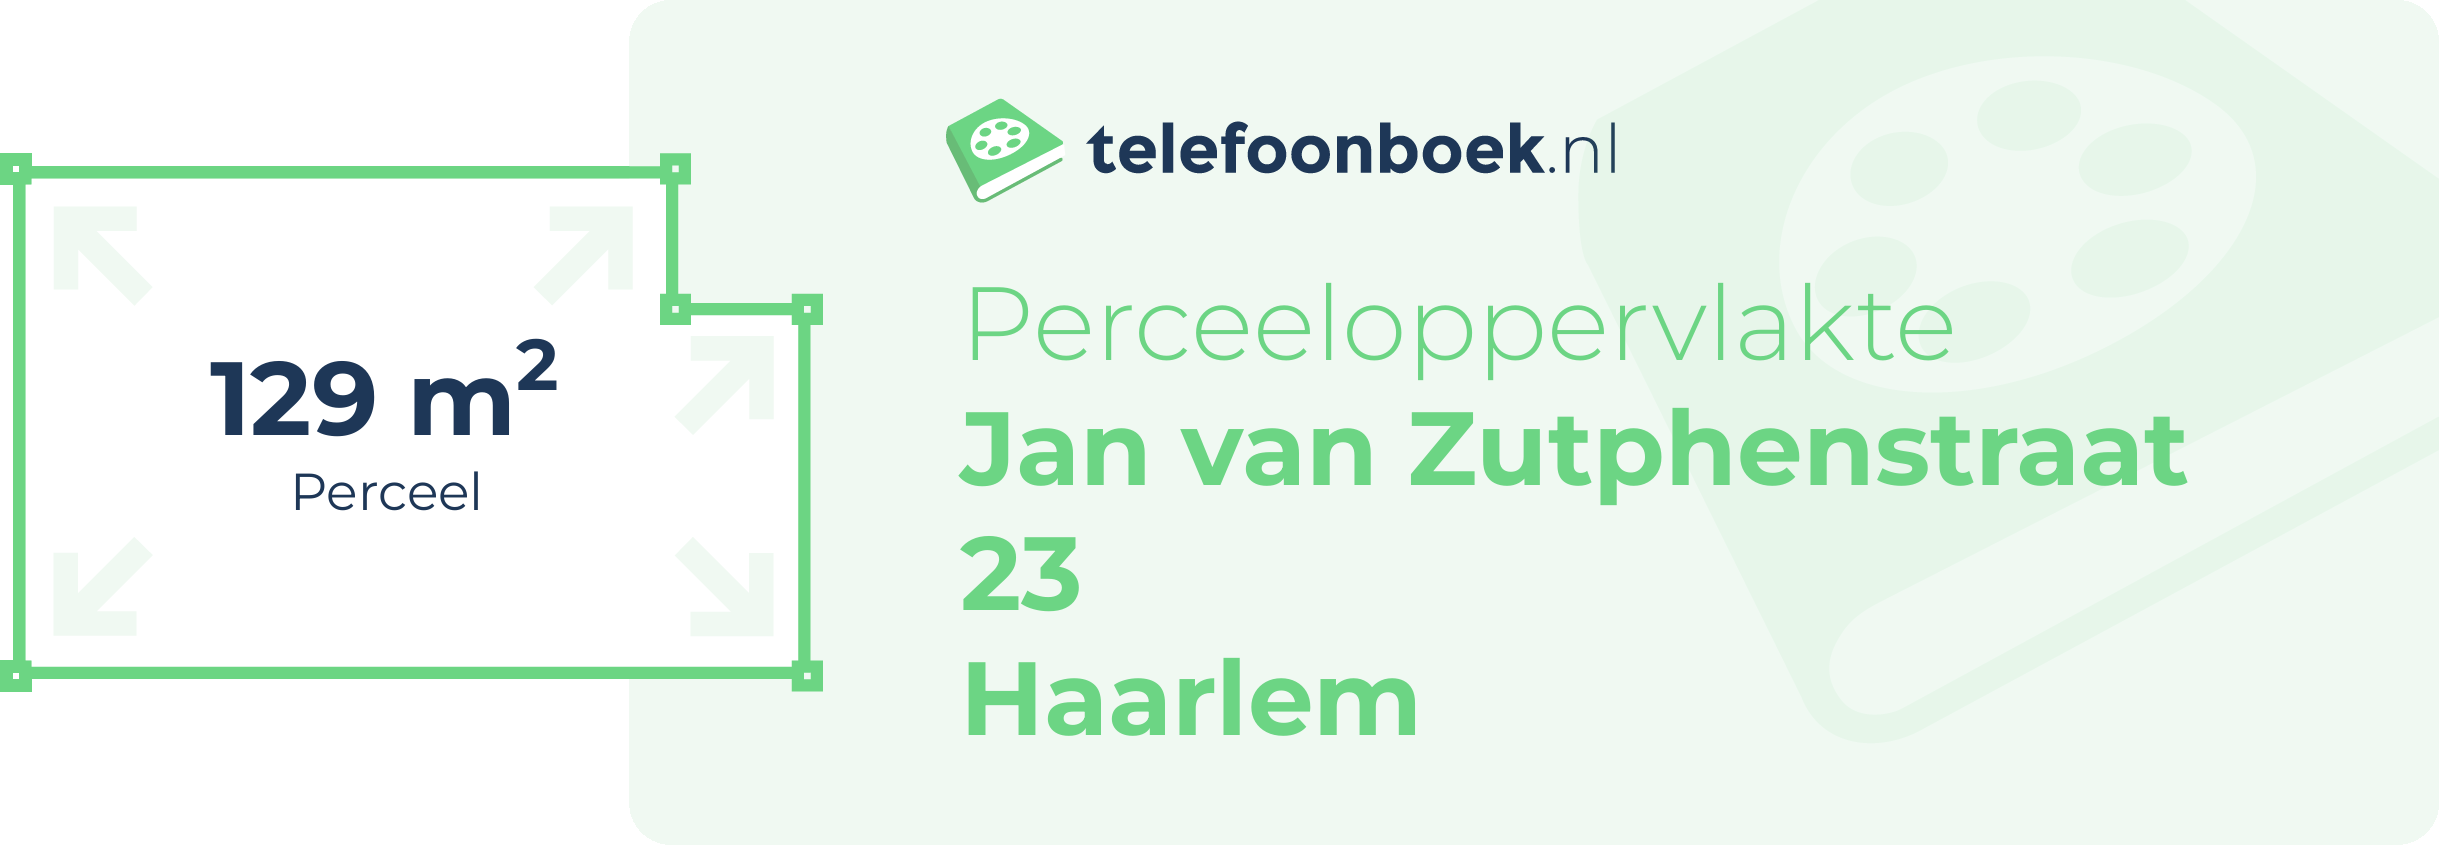 Perceeloppervlakte Jan Van Zutphenstraat 23 Haarlem